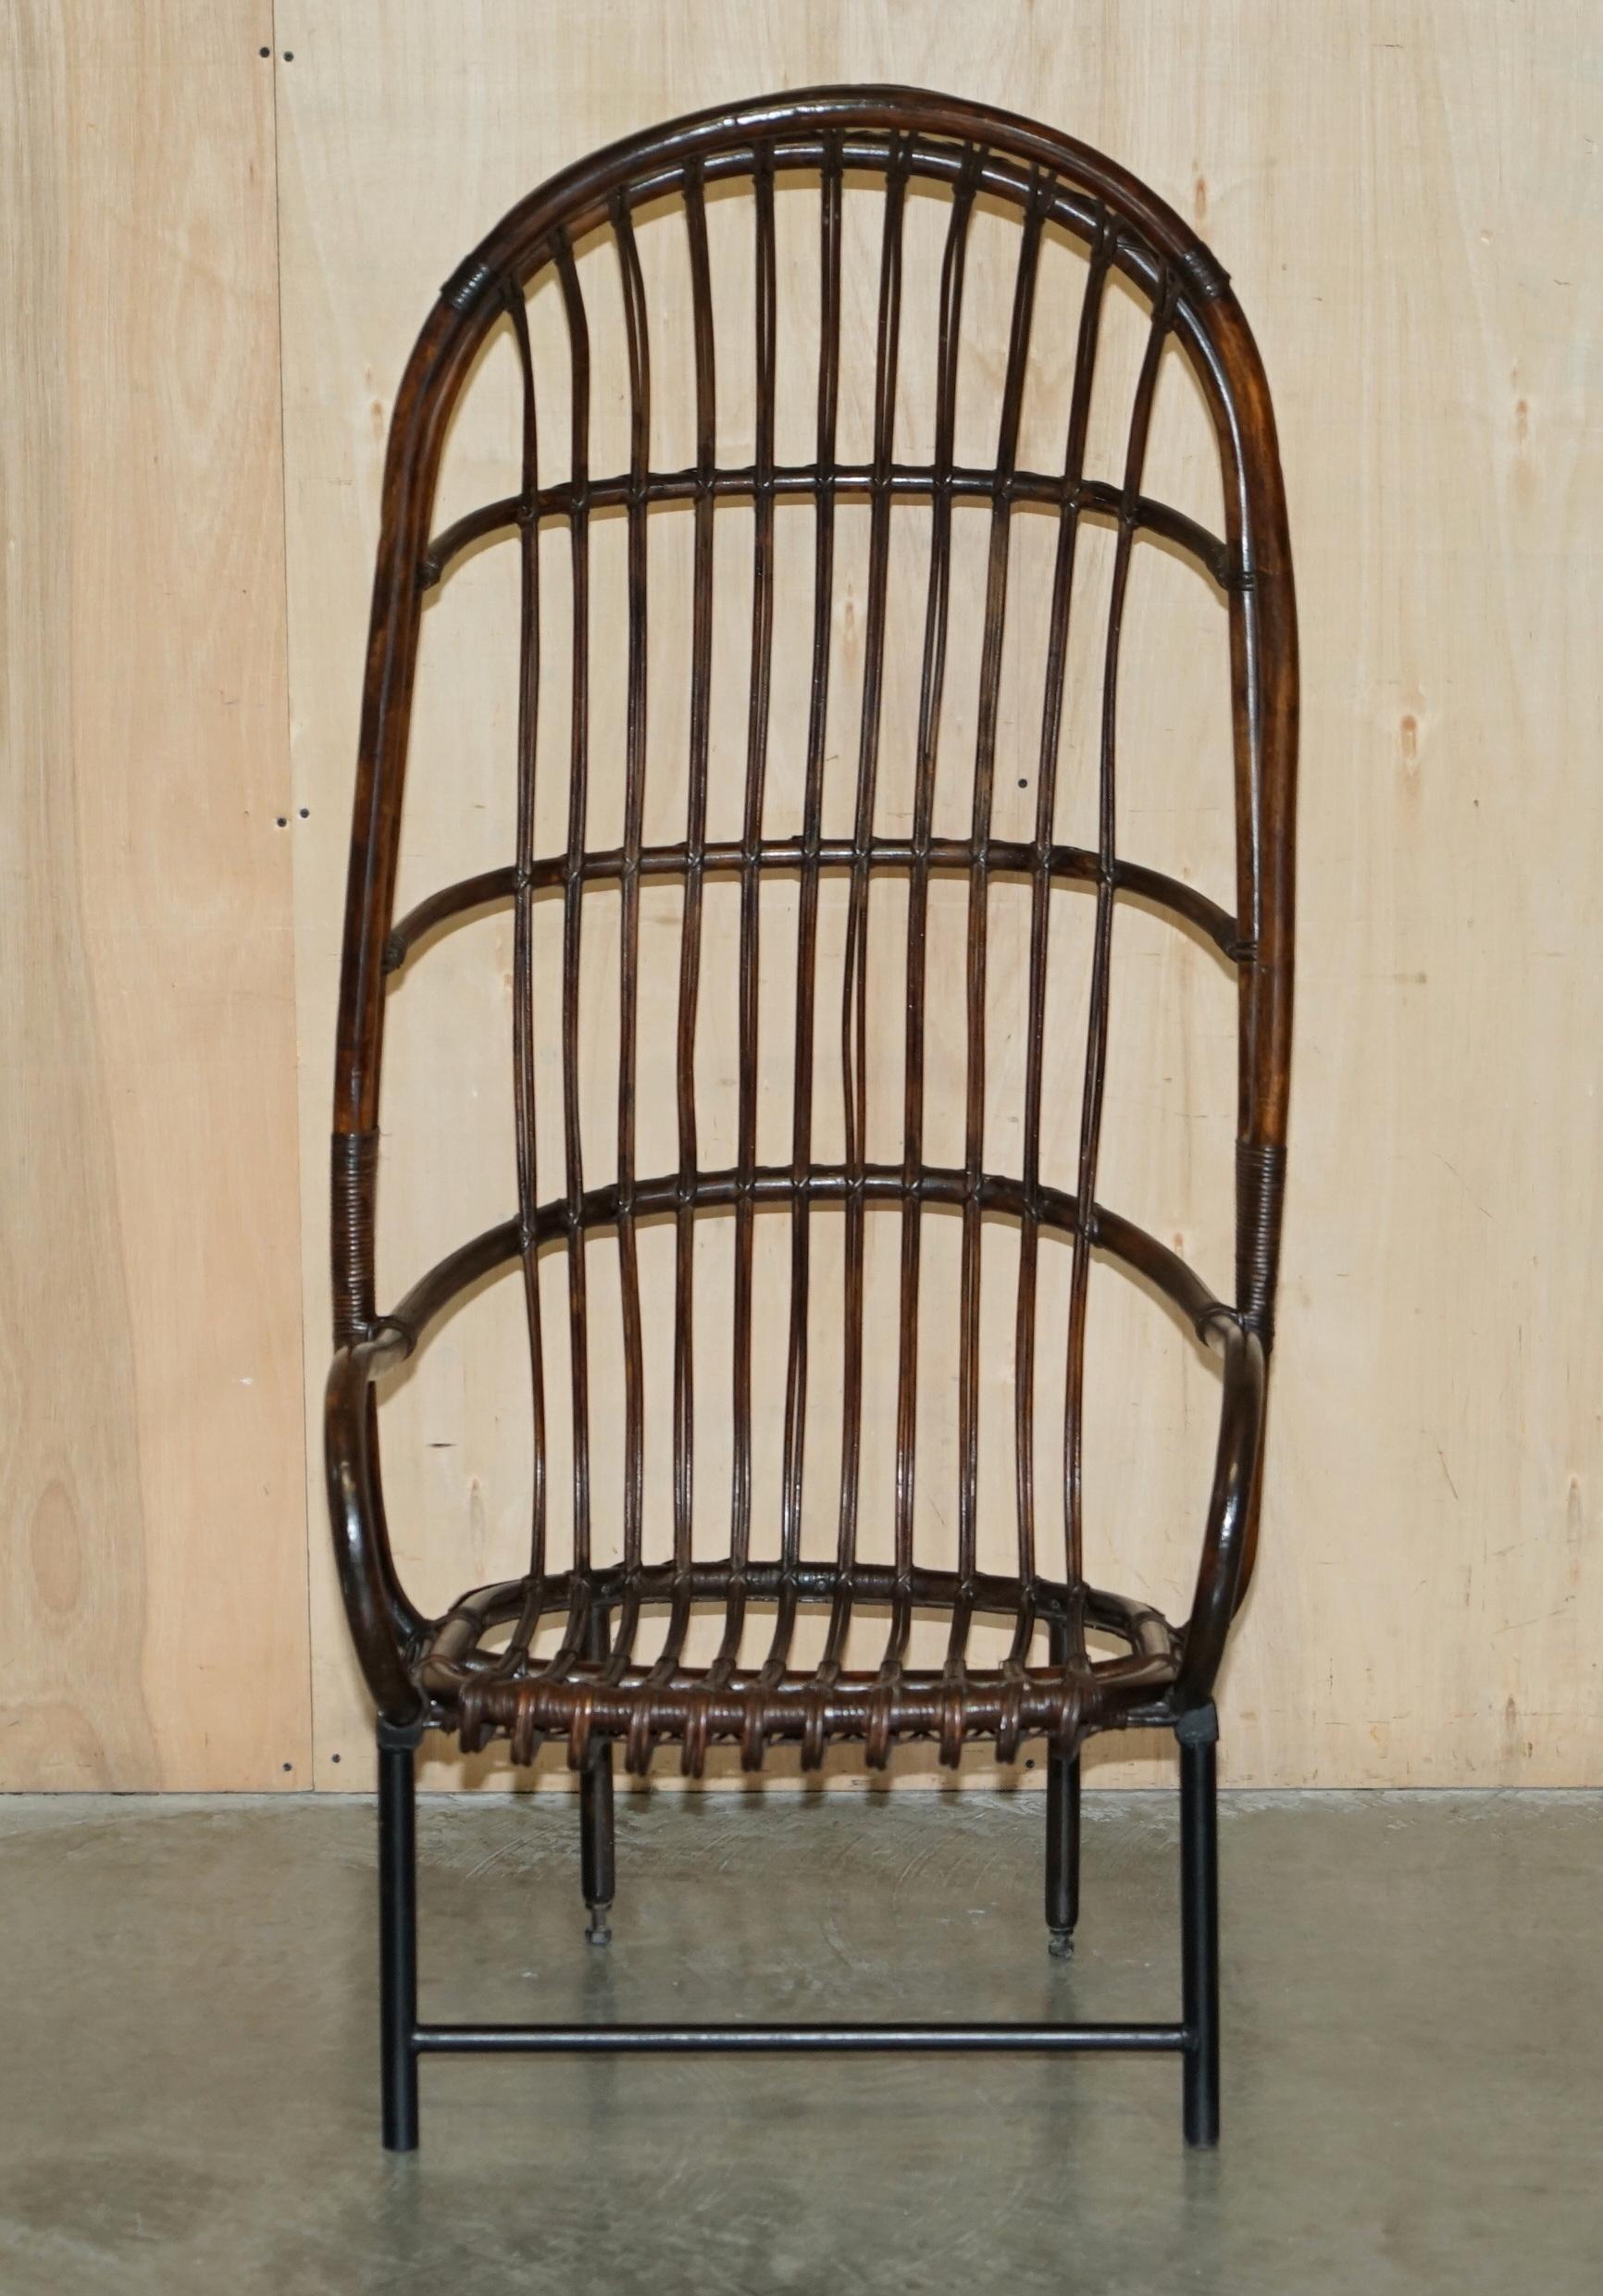 Royal House Antiques

Royal House Antiques a le plaisir d'offrir à la vente ce fauteuil à dossier ailé en bambou de Thonet, très rare et de grande collection, entièrement dimensionné, avec un piètement en acier pondéré. 

Veuillez noter que les